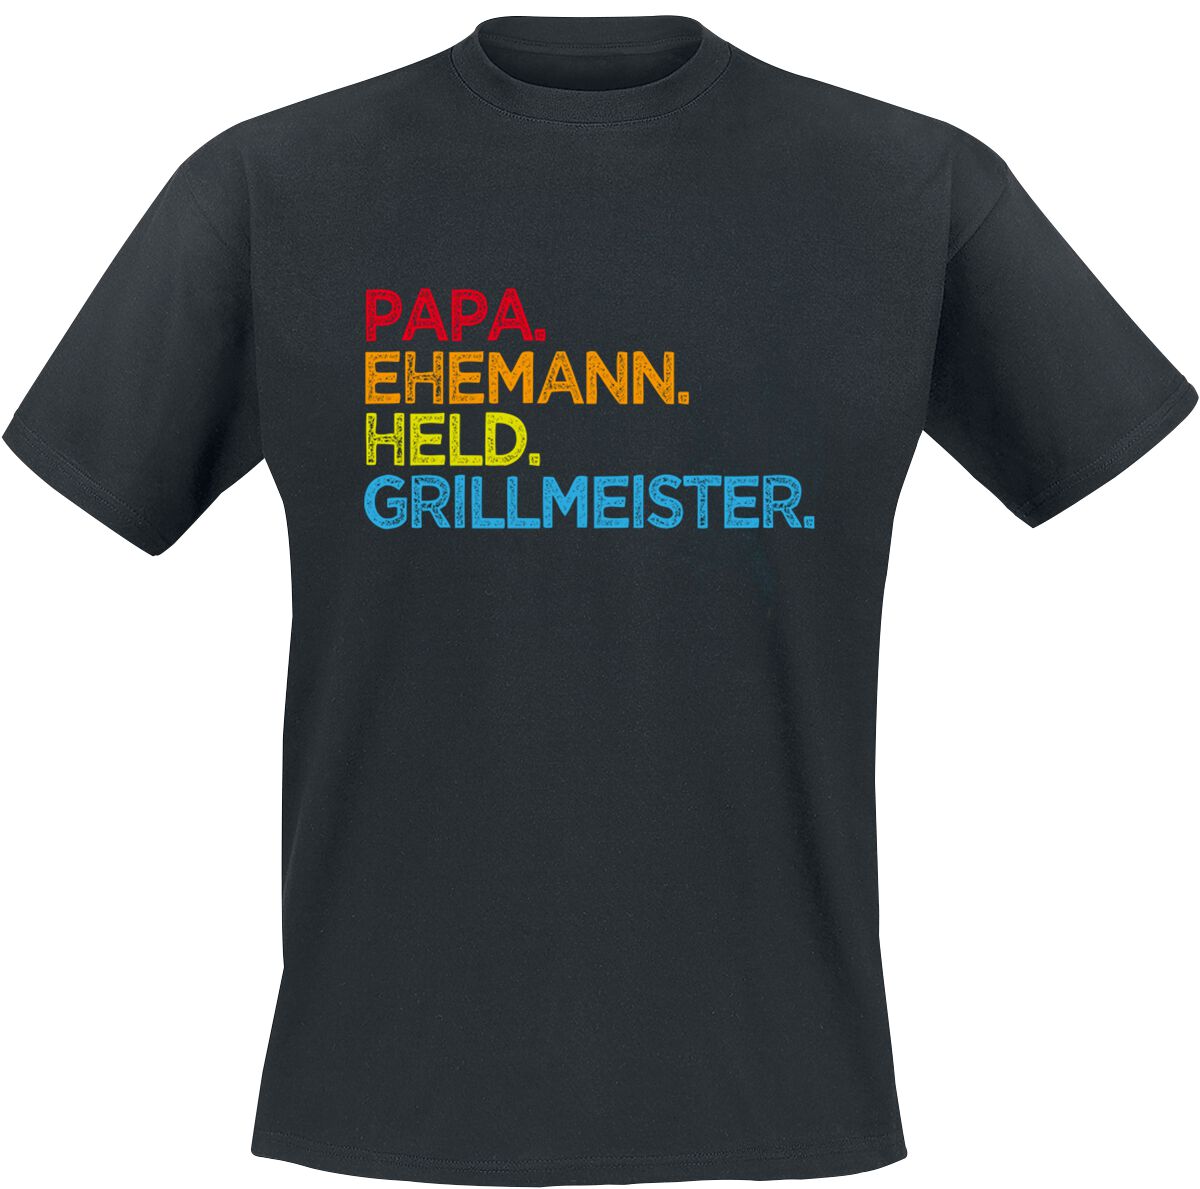 Familie & Freunde T-Shirt - Papa. Ehemann. Held. Grillmeister - S bis 5XL - für Männer - Größe 3XL - schwarz